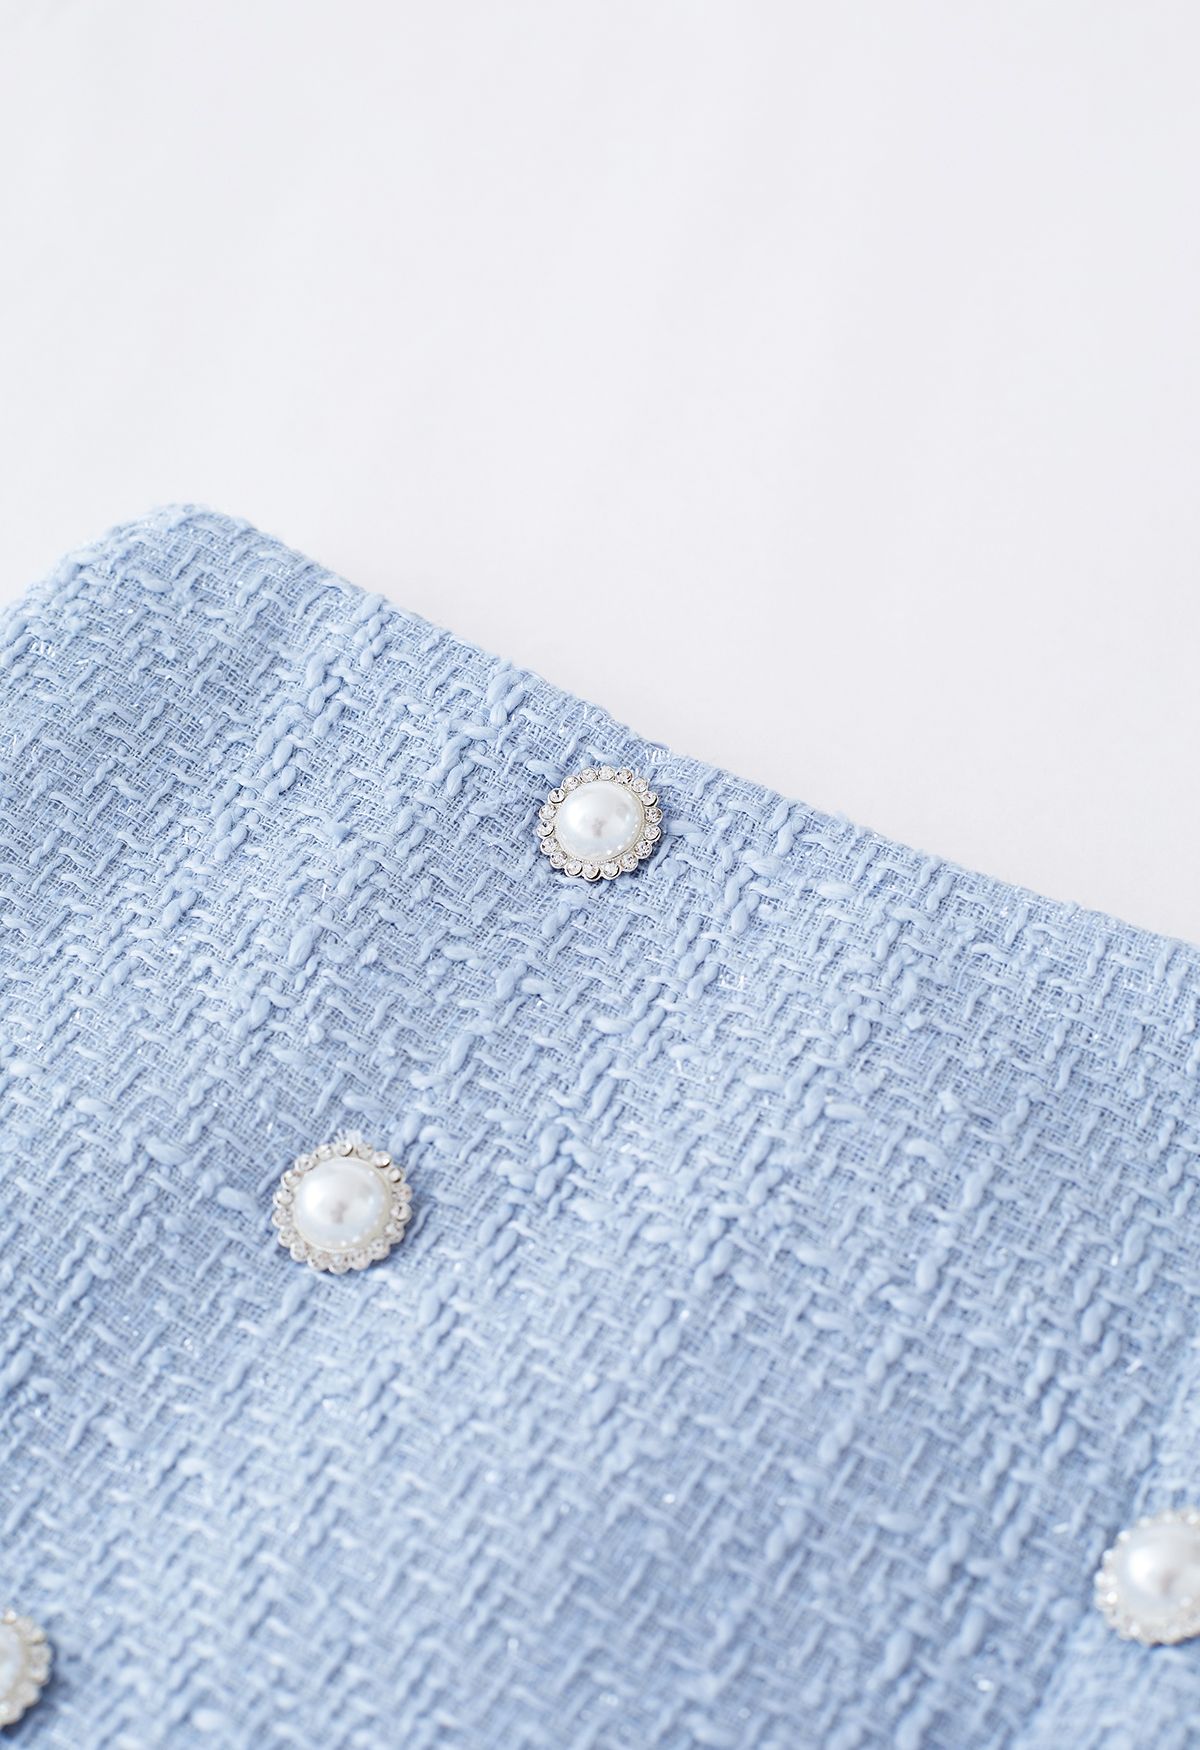 Minifalda de tweed plisada con doble botonadura en azul